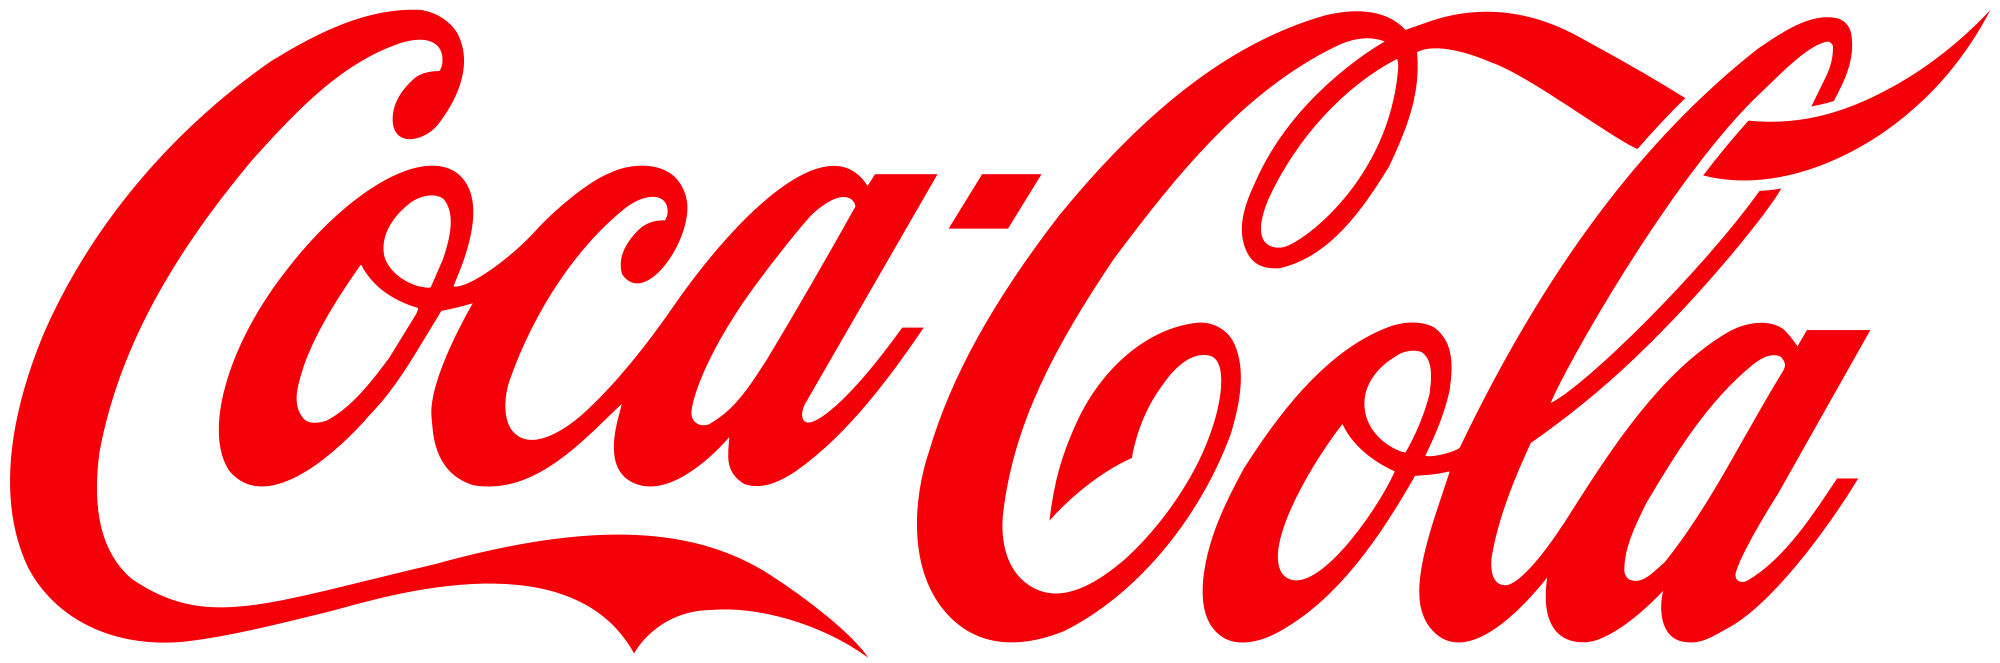 Coca cola logo png.